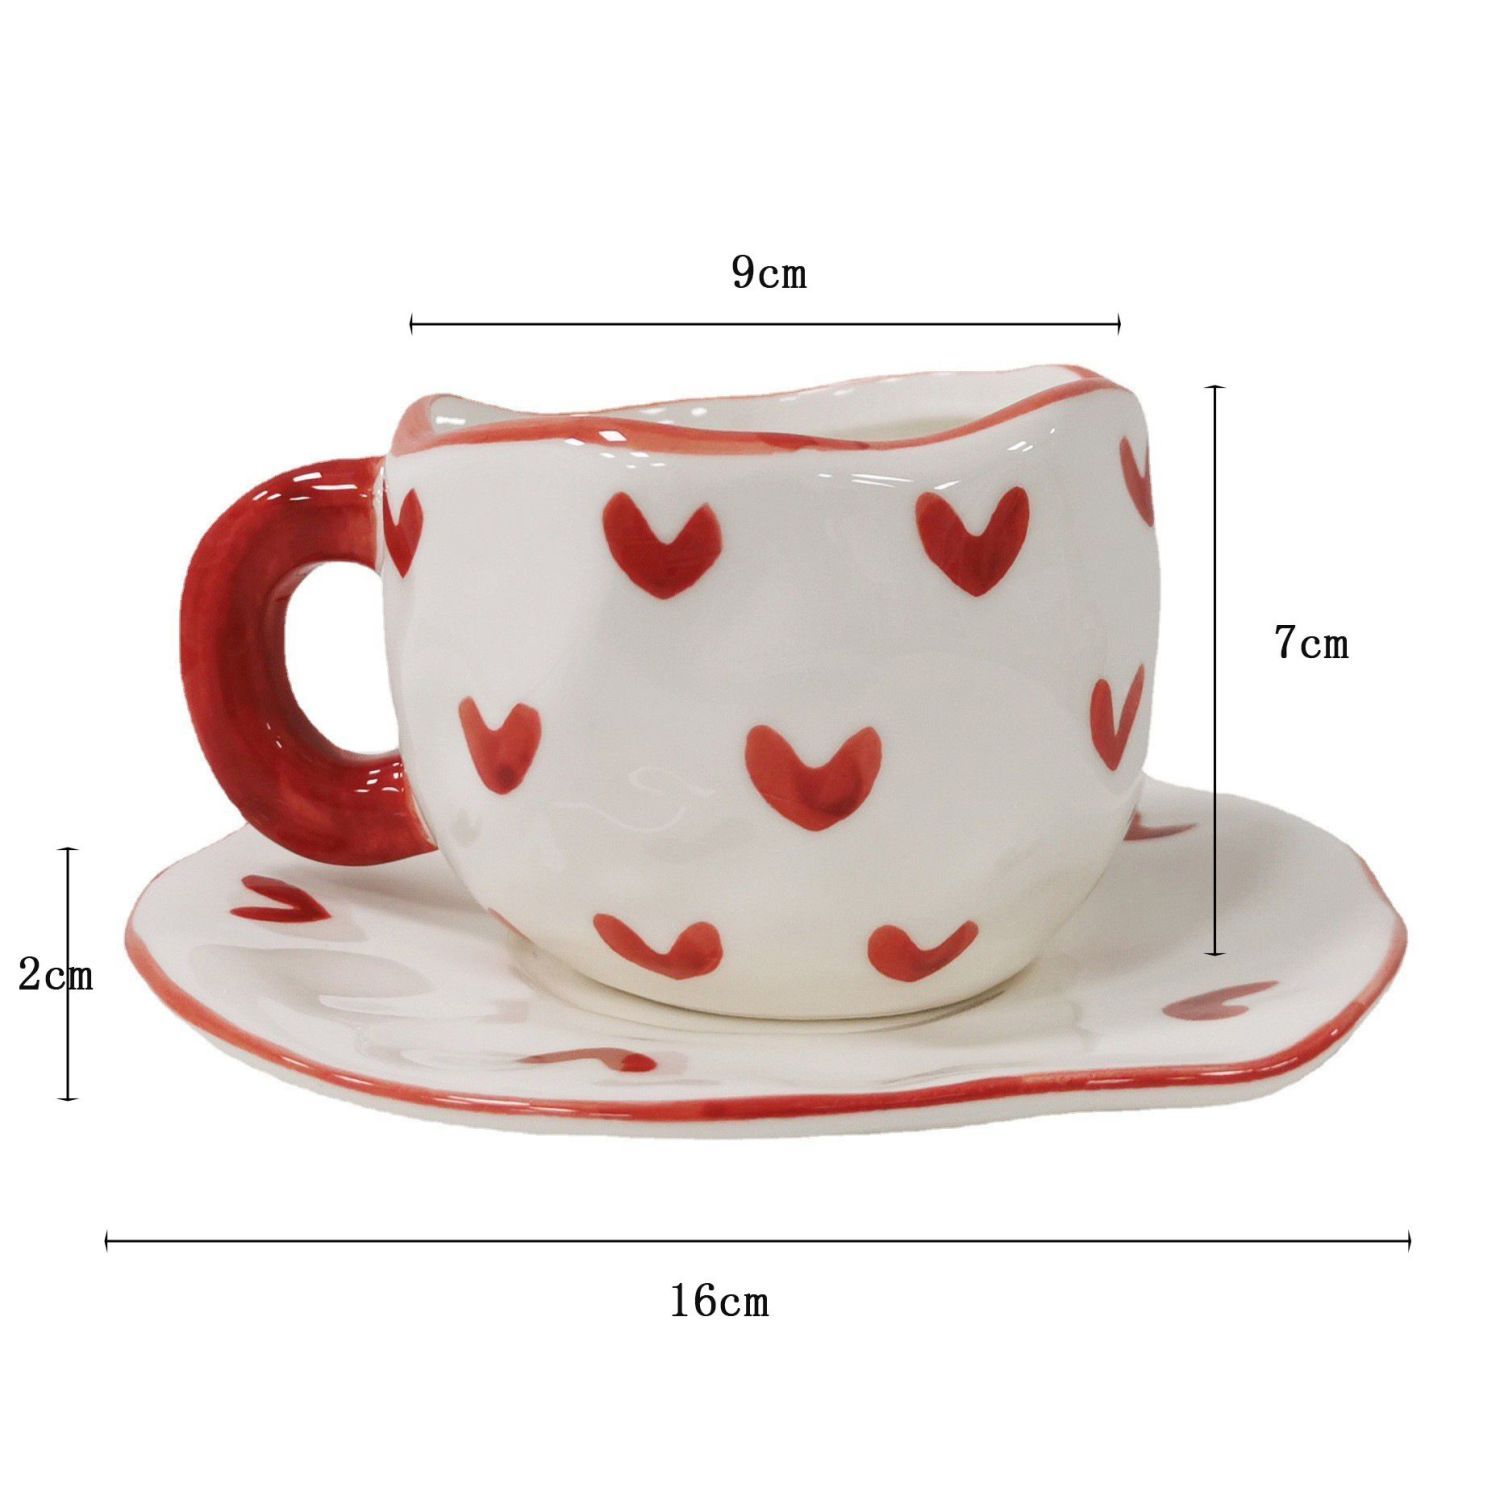 海棠依旧~新款ins红色爱心杯碟陶瓷手捏咖啡杯小众个性手绘杯碟